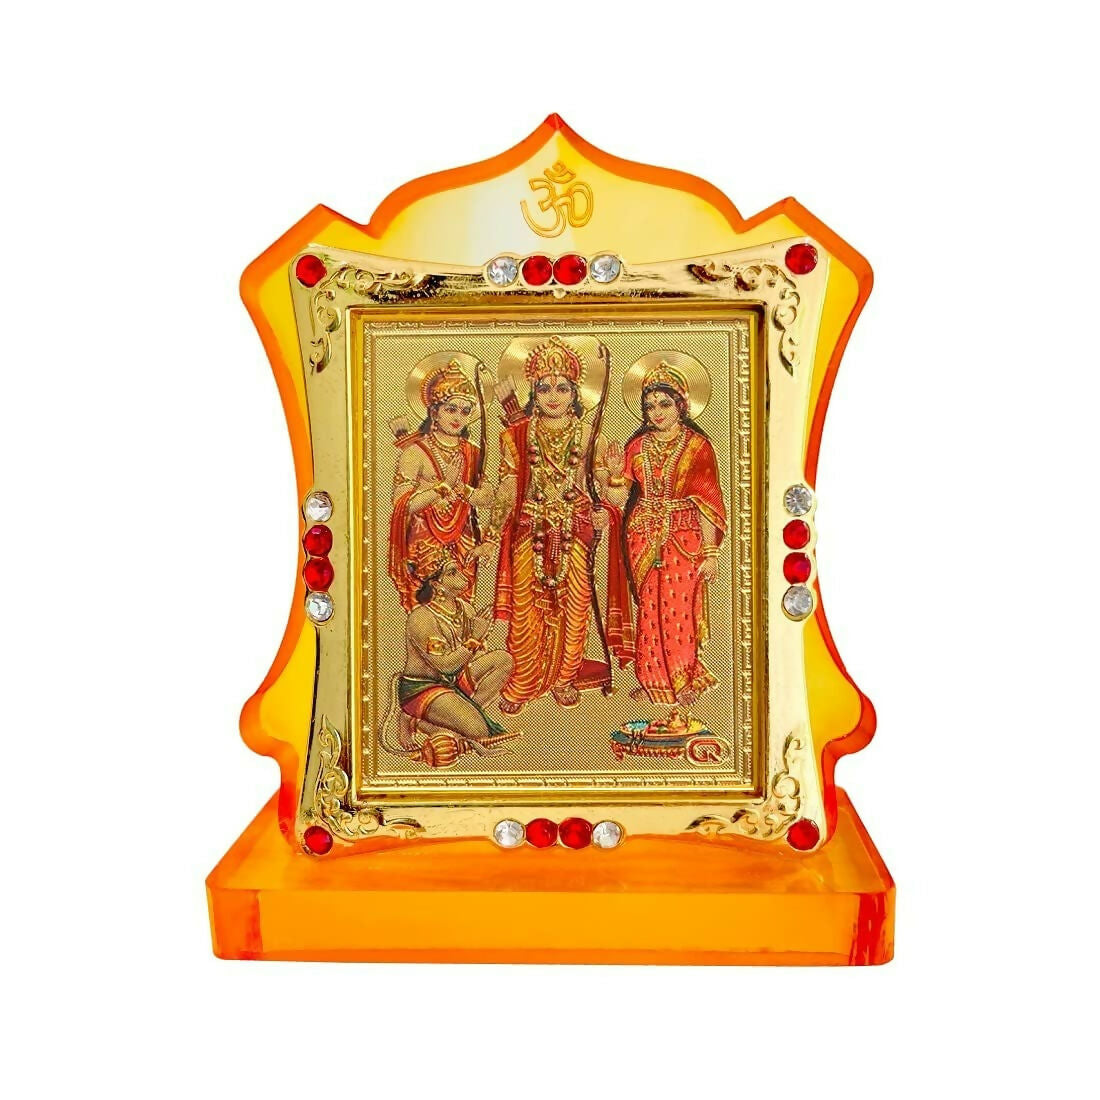 JMStore Hindu Lord Shri Ram Darbar Statue Ram Darbar Murti with Mara Sita, Laxman & Hanuman Ji - Distacart